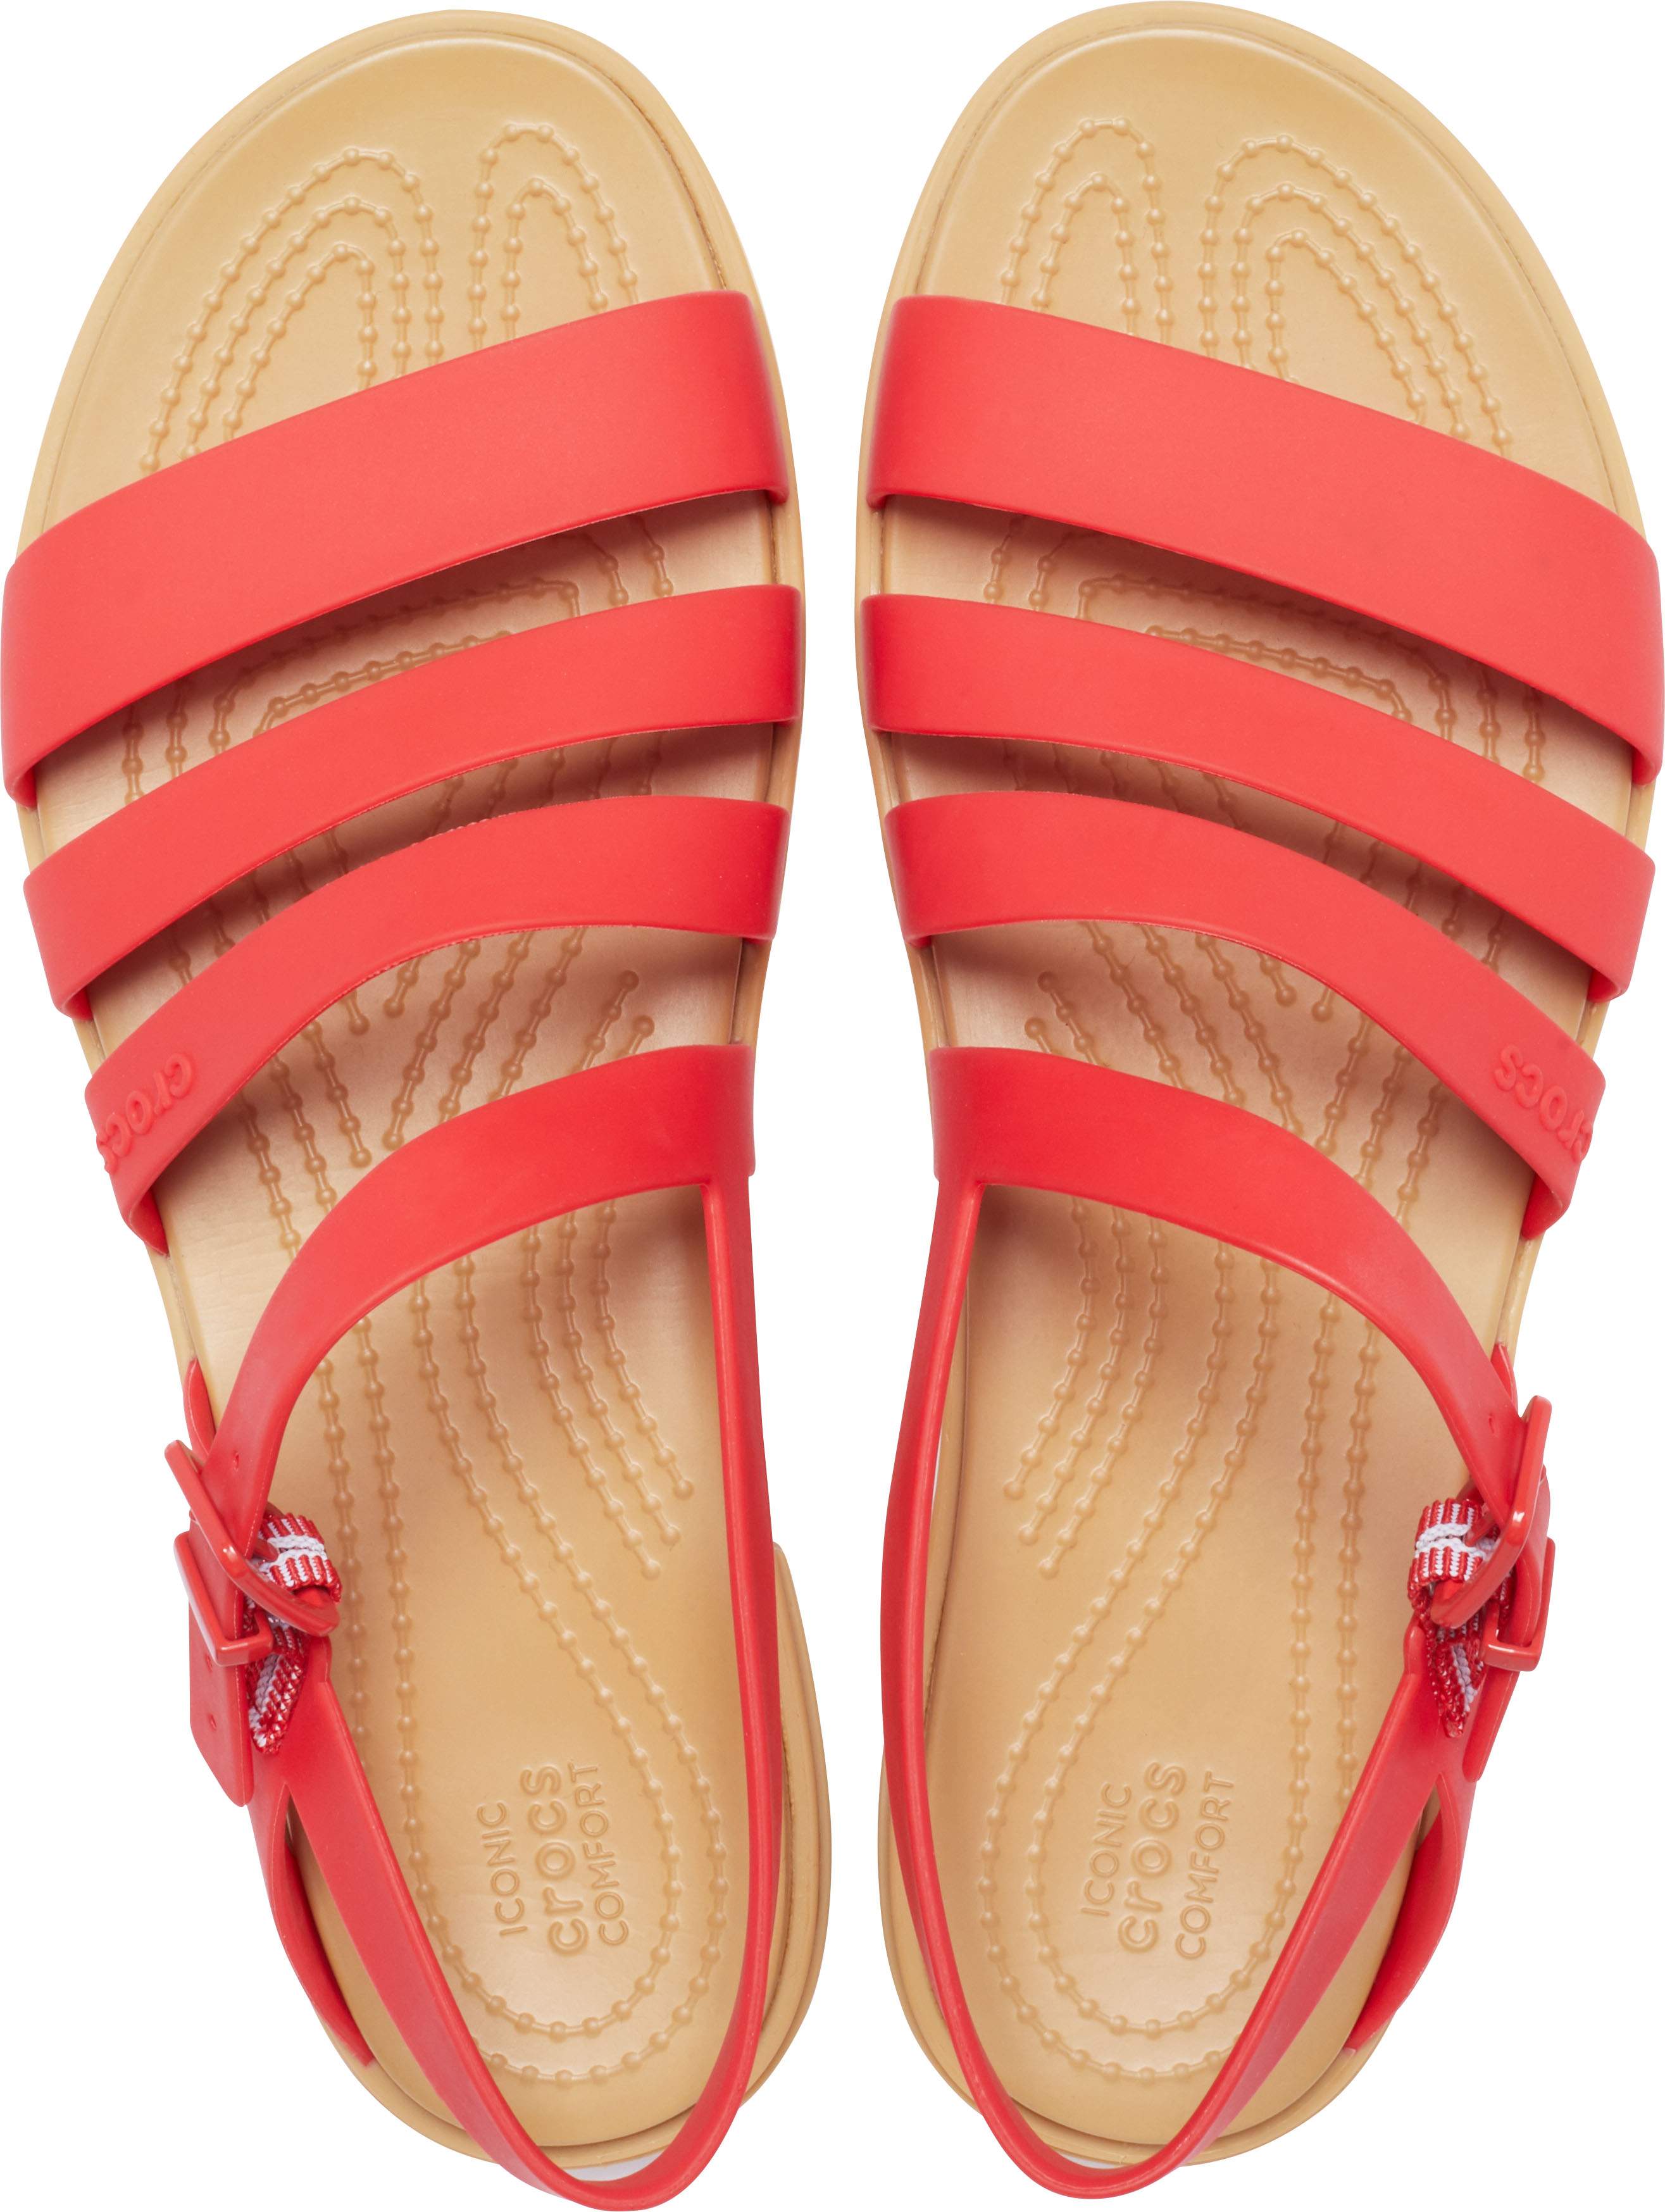 crocs colorful sandals